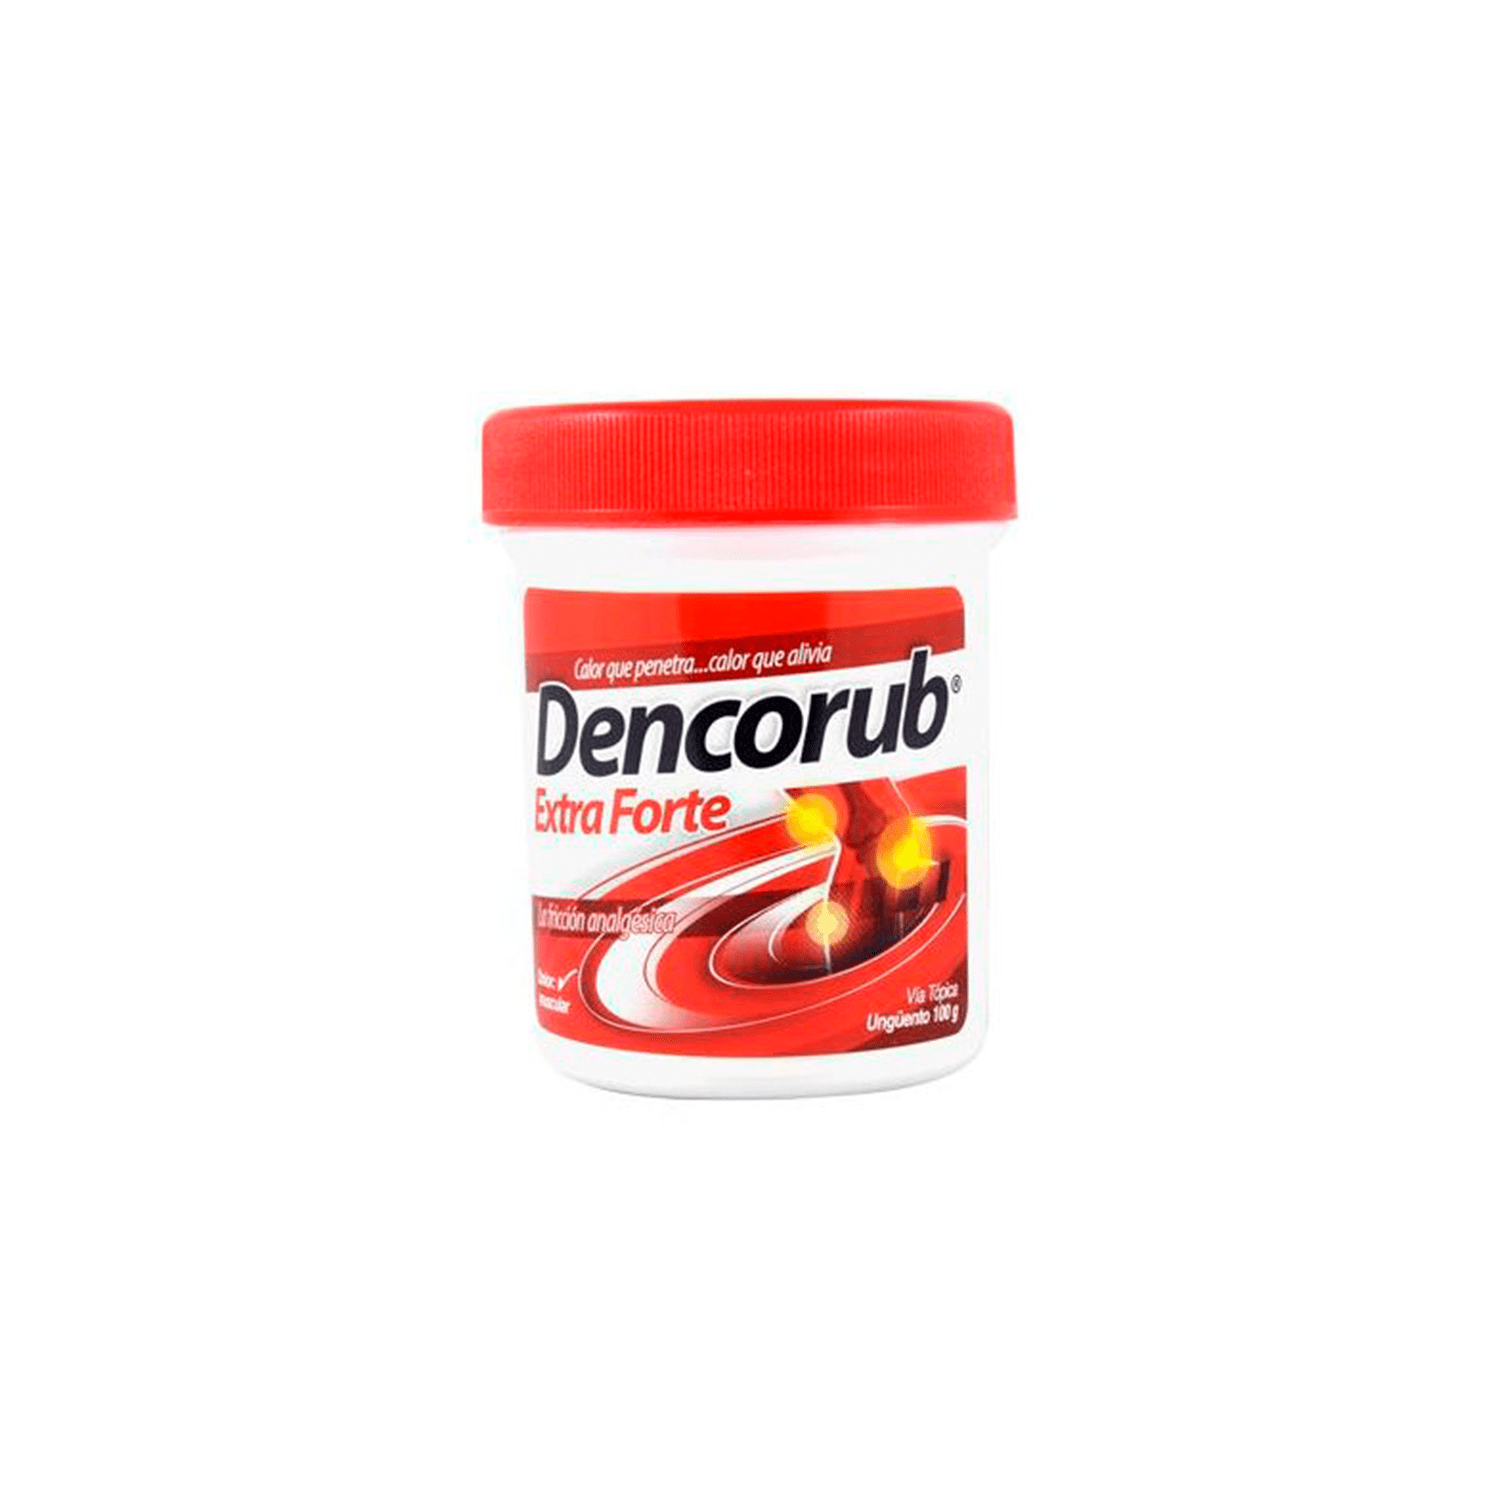 Dencorub Extra Forte 100g - HM Medical